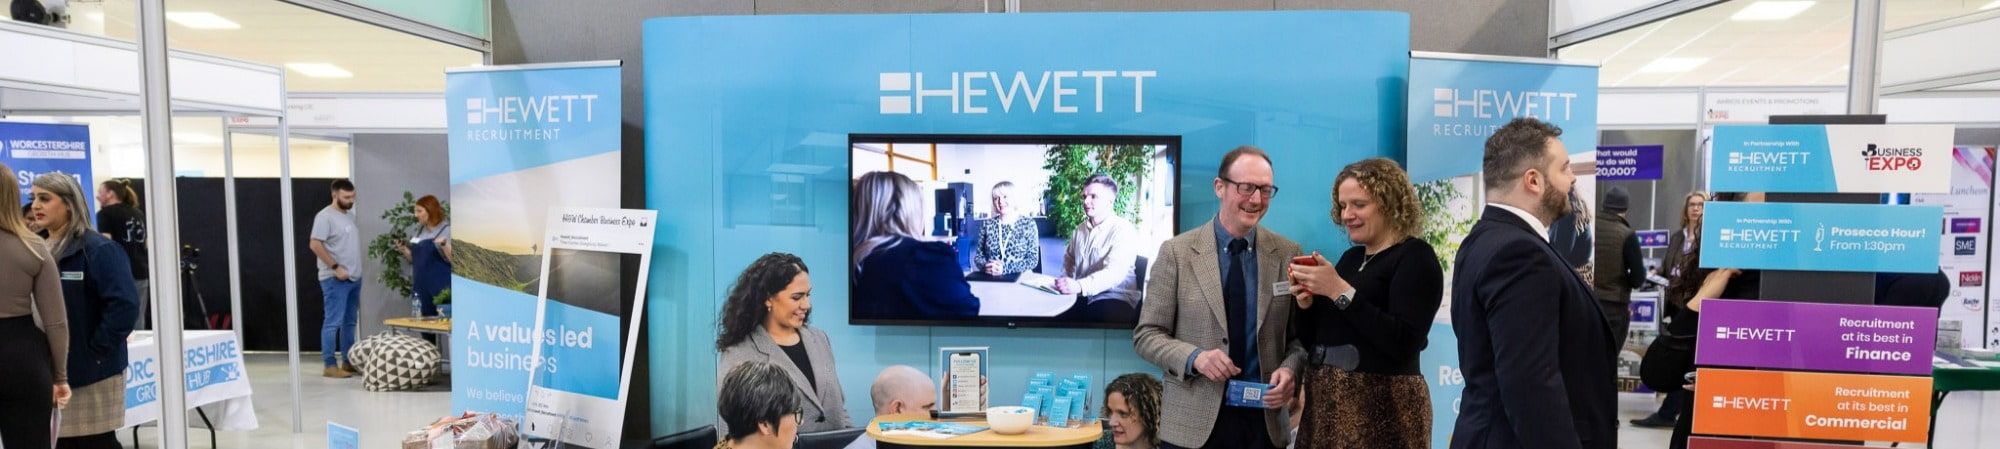 Hewett Recruitment Events